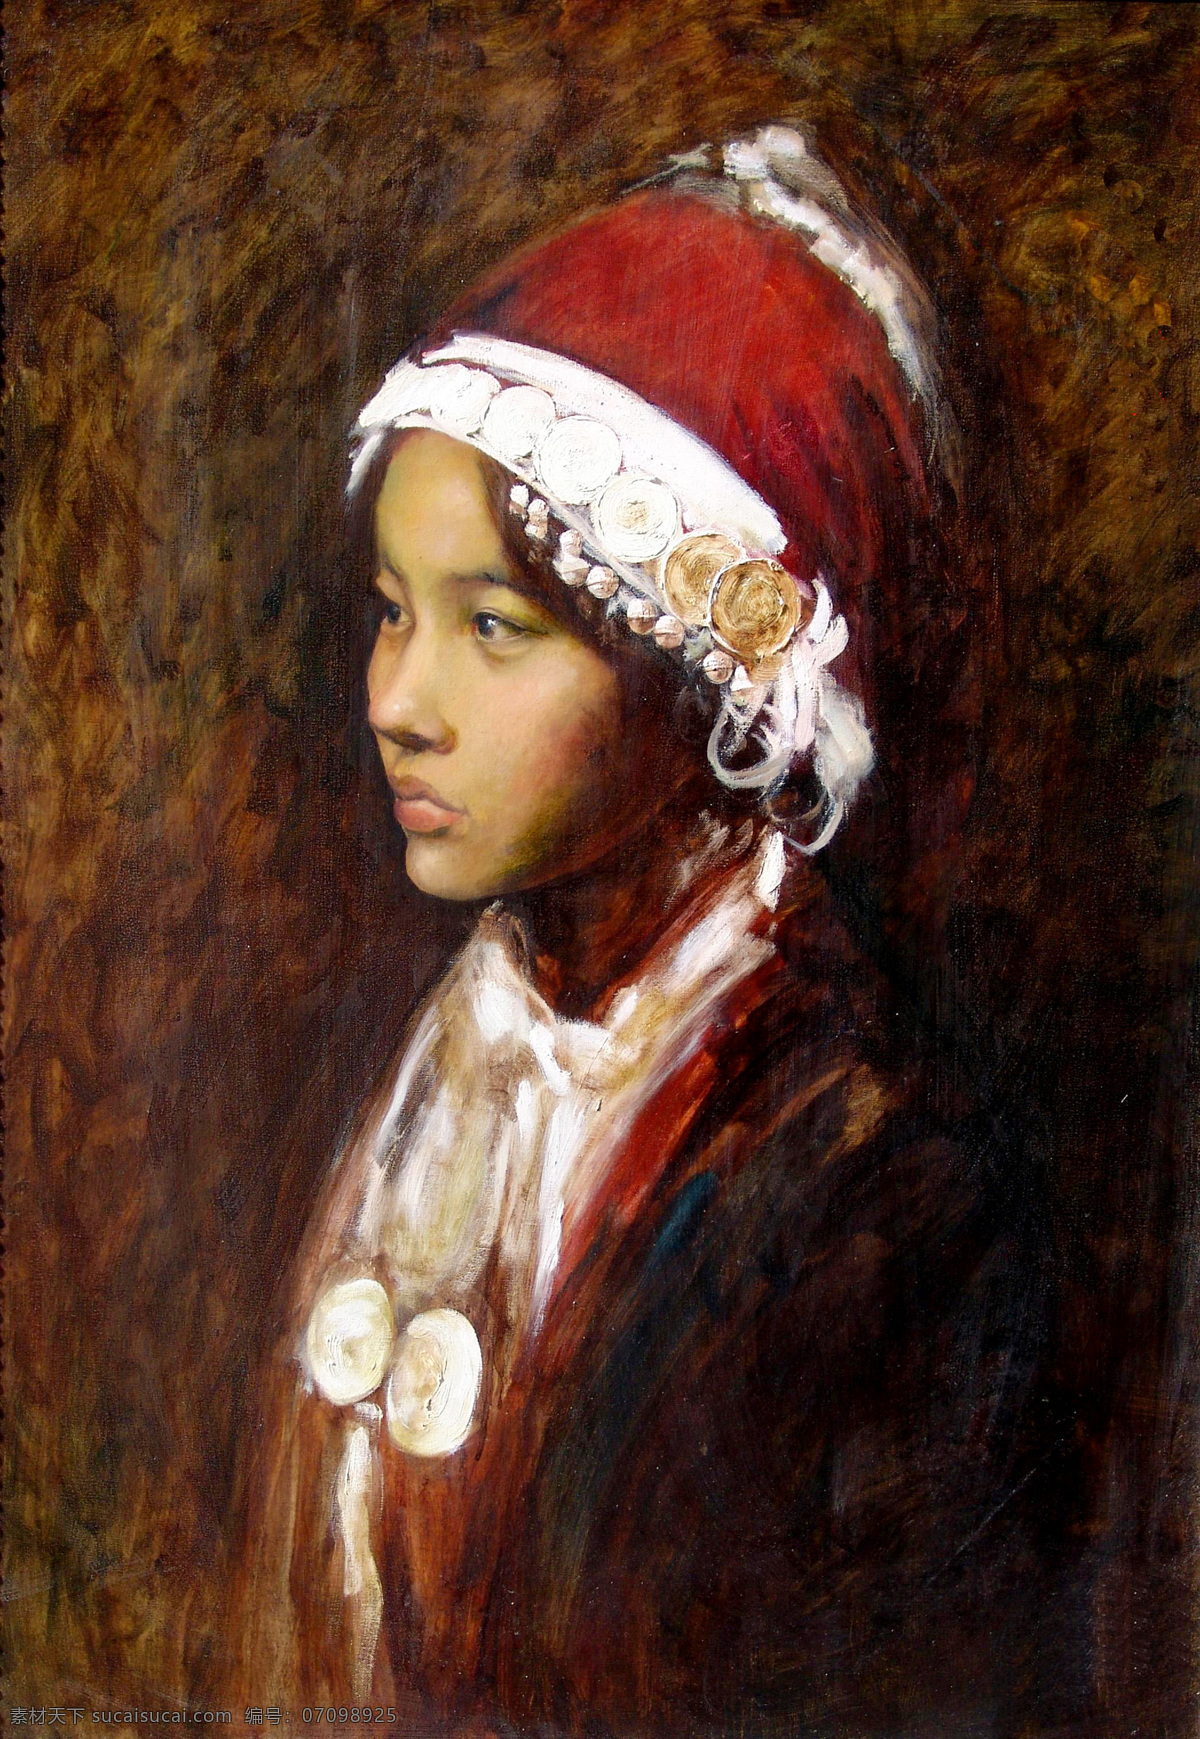 西藏 女孩 油画 肖像 藏族女孩油画 肖像画 儿童油画肖像 人物肖像画 东方 人物 写生 油画艺术 绘画艺术 装饰画 书画文字 文化艺术